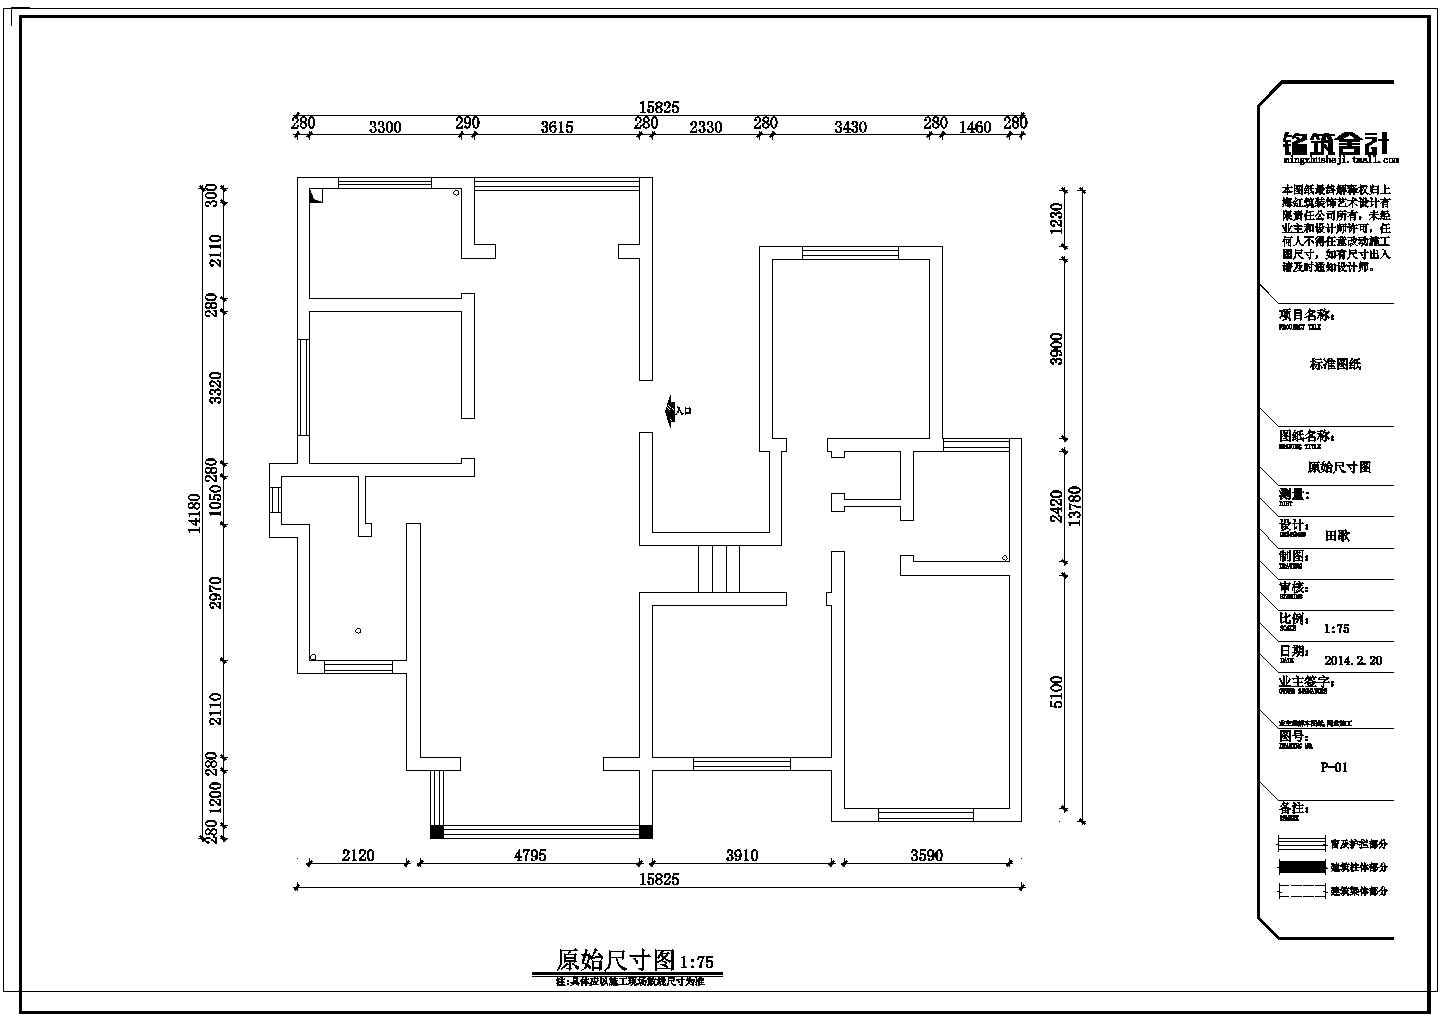 地中海 邂x-蓝-四室两厅住宅装修设计图（含设计说明）